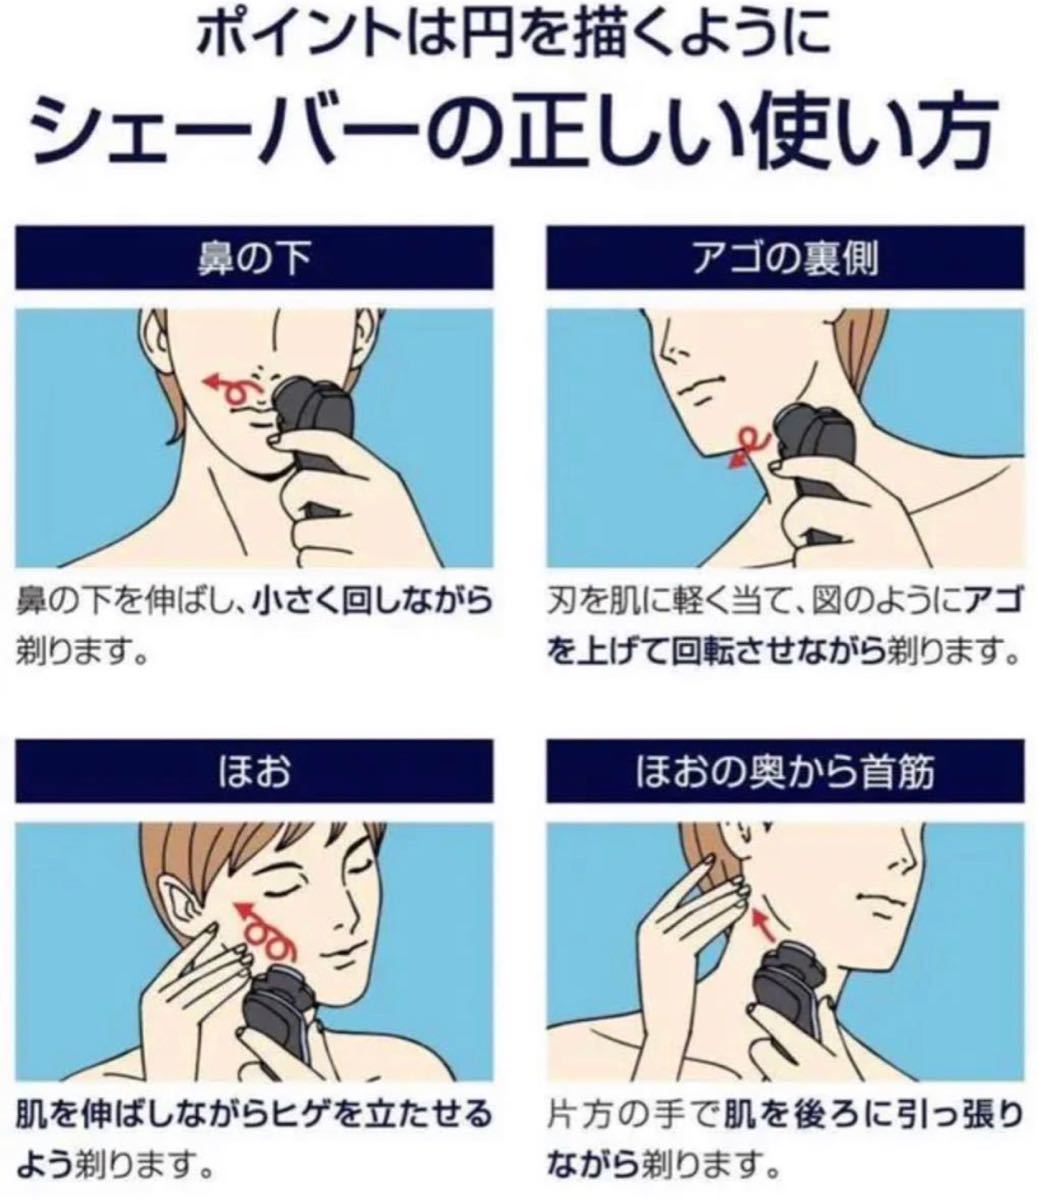 【激安商品】電気シェーバー メンズ 髭剃り 電動 回転式